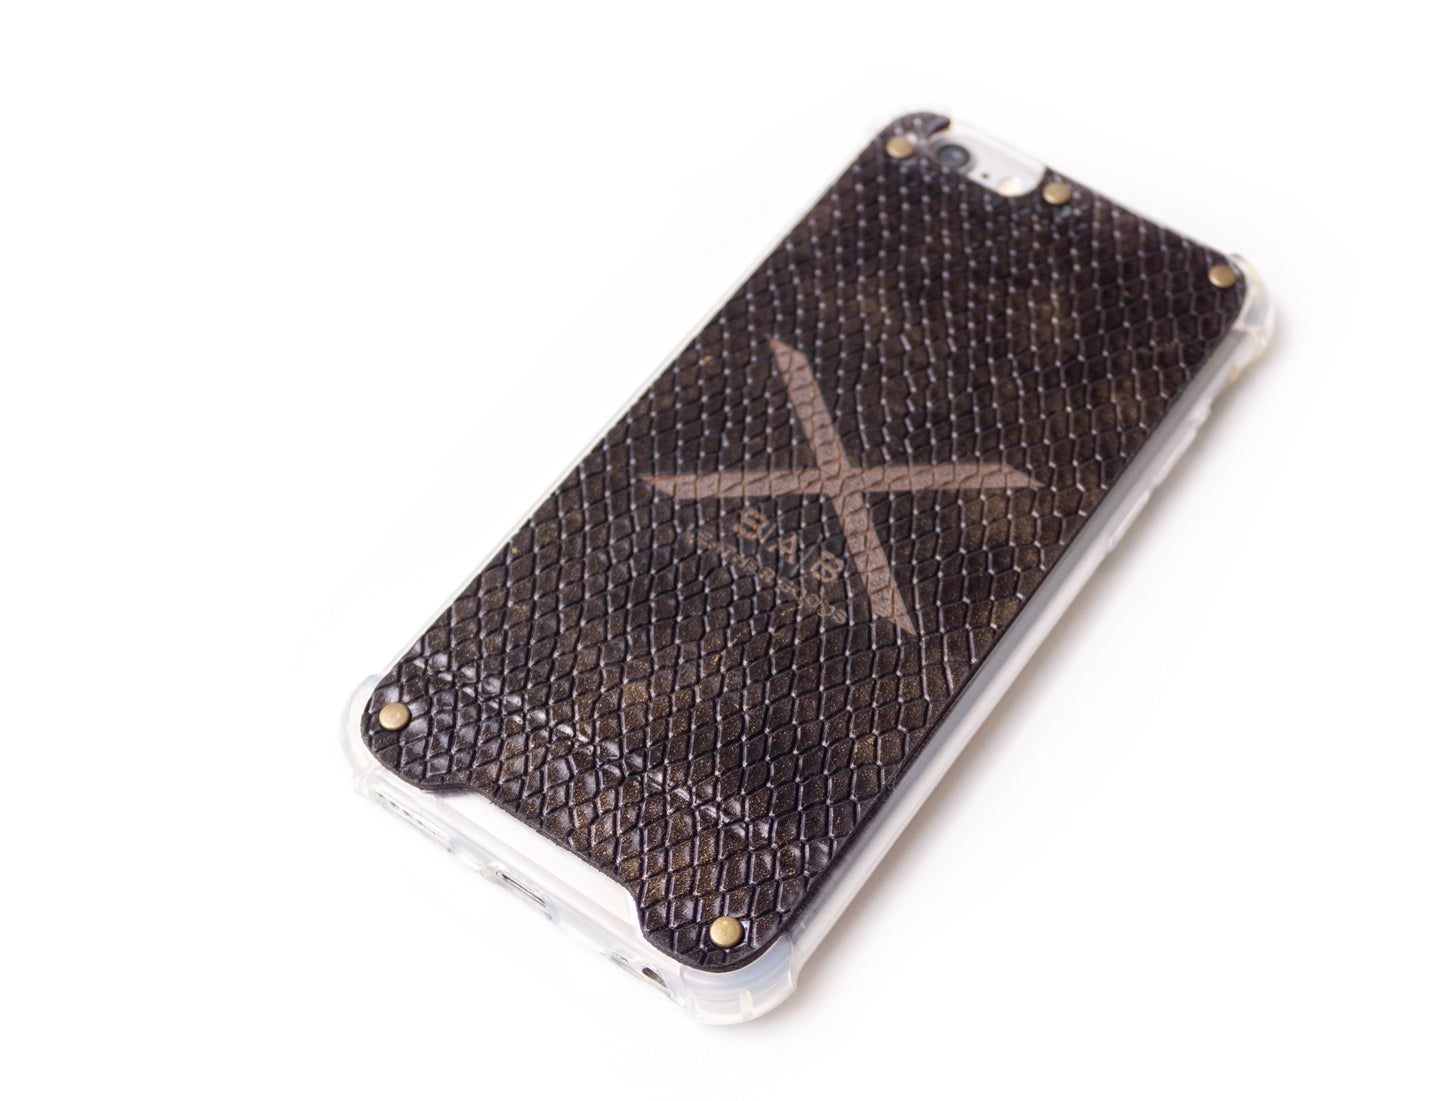 Capa para iPhone de Couro Genuíno Python Dourado Texturizado cortado e gravado a laser, 5 Rebites de Bronze.- F36